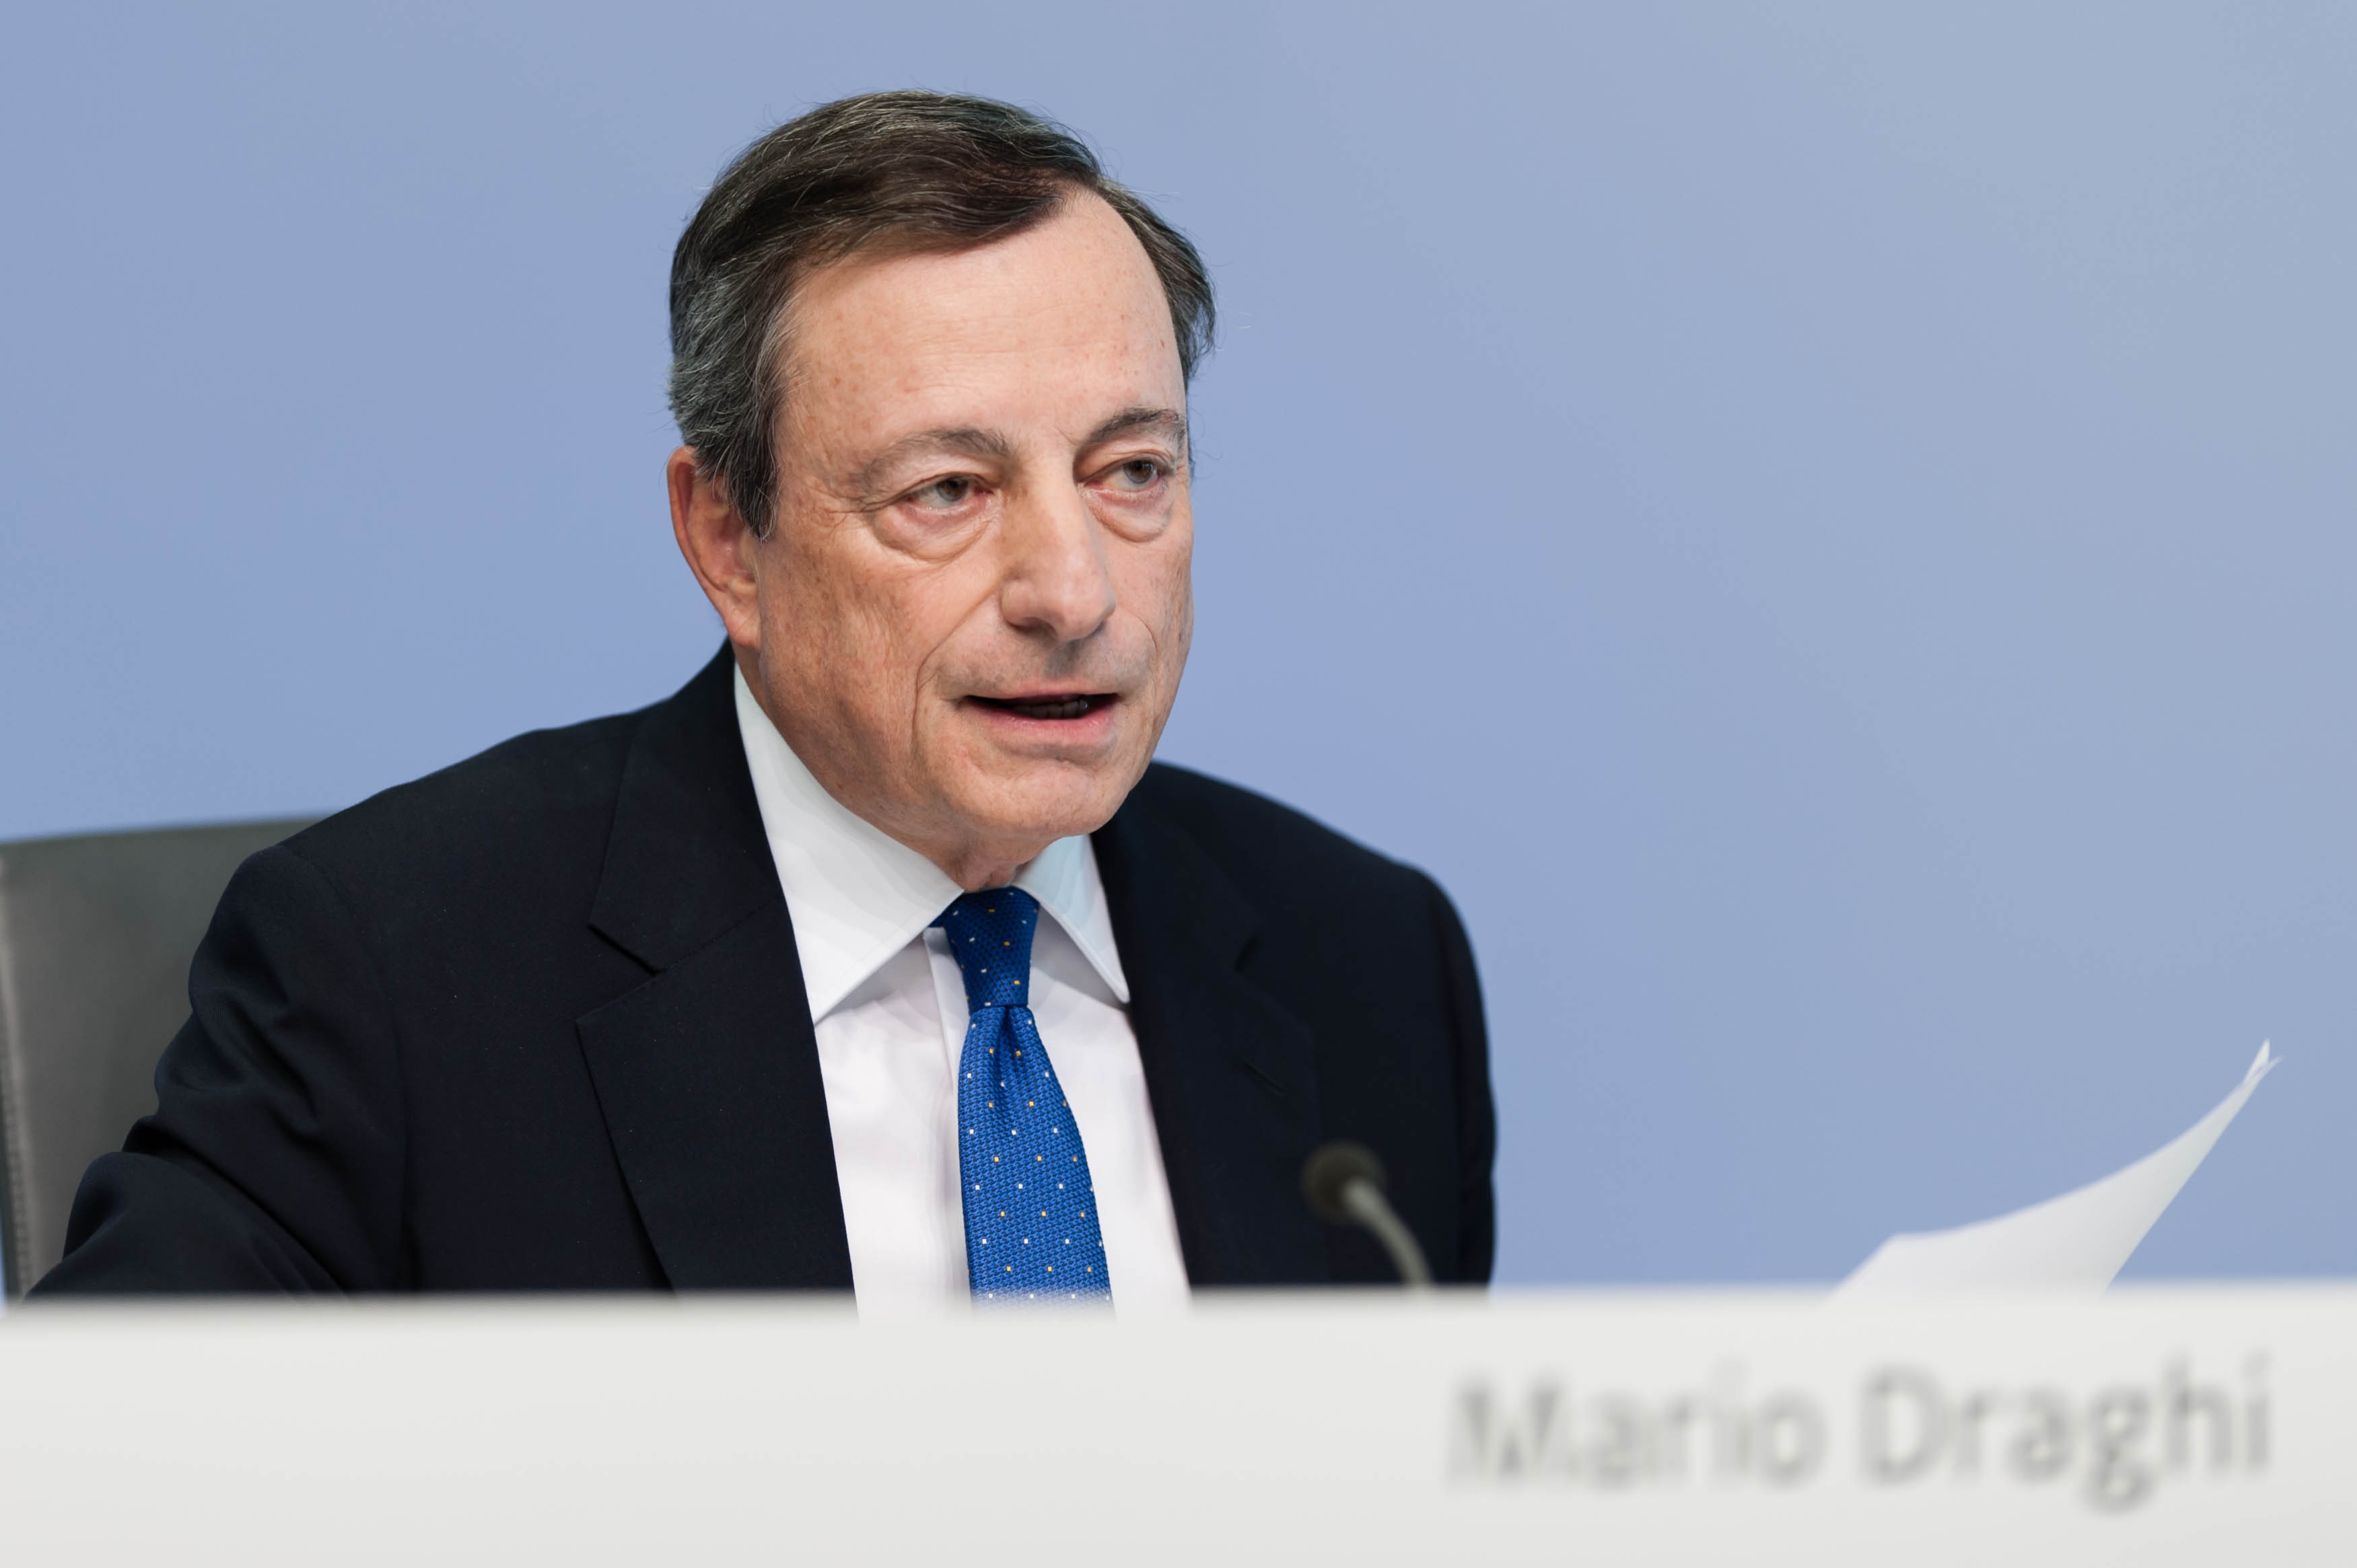 Mario Draghi BCE Banco Central Europeo